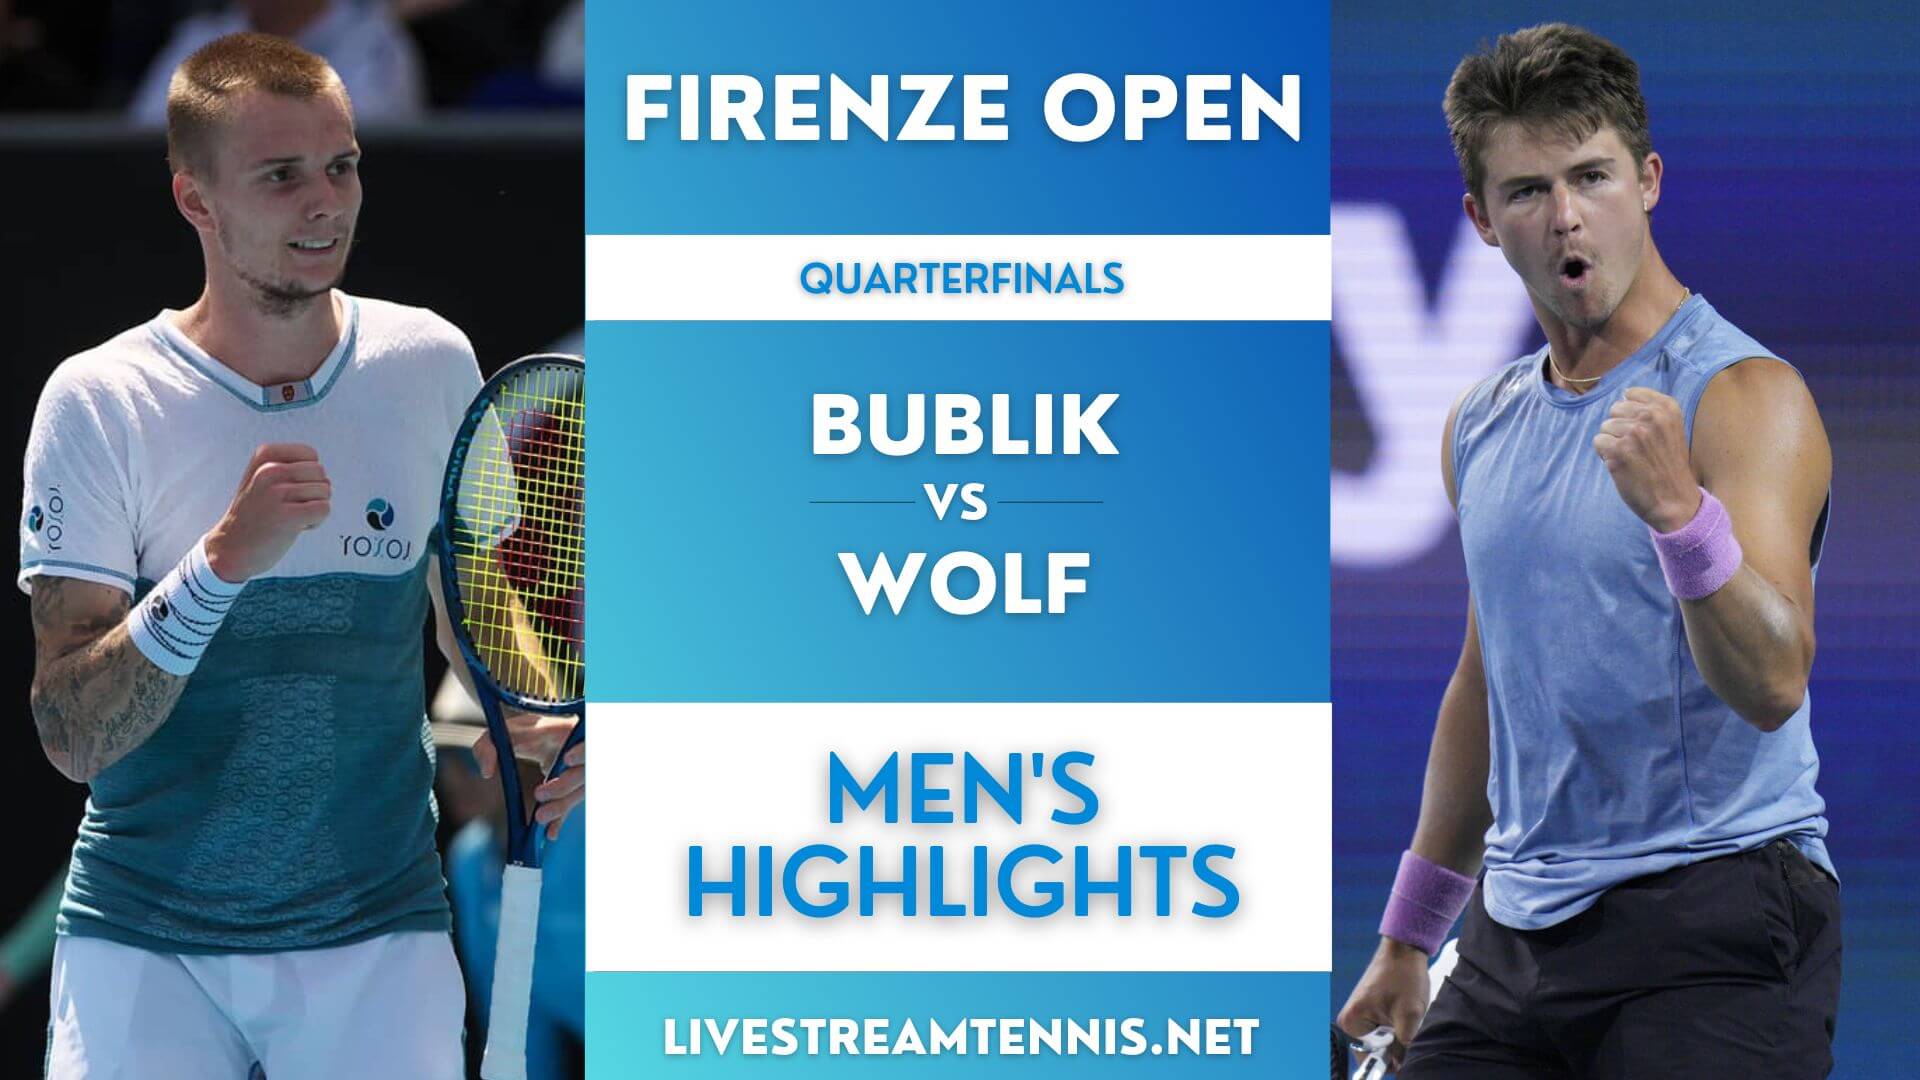 Firenze Open ATP Quarterfinal 2 Highlights 2022